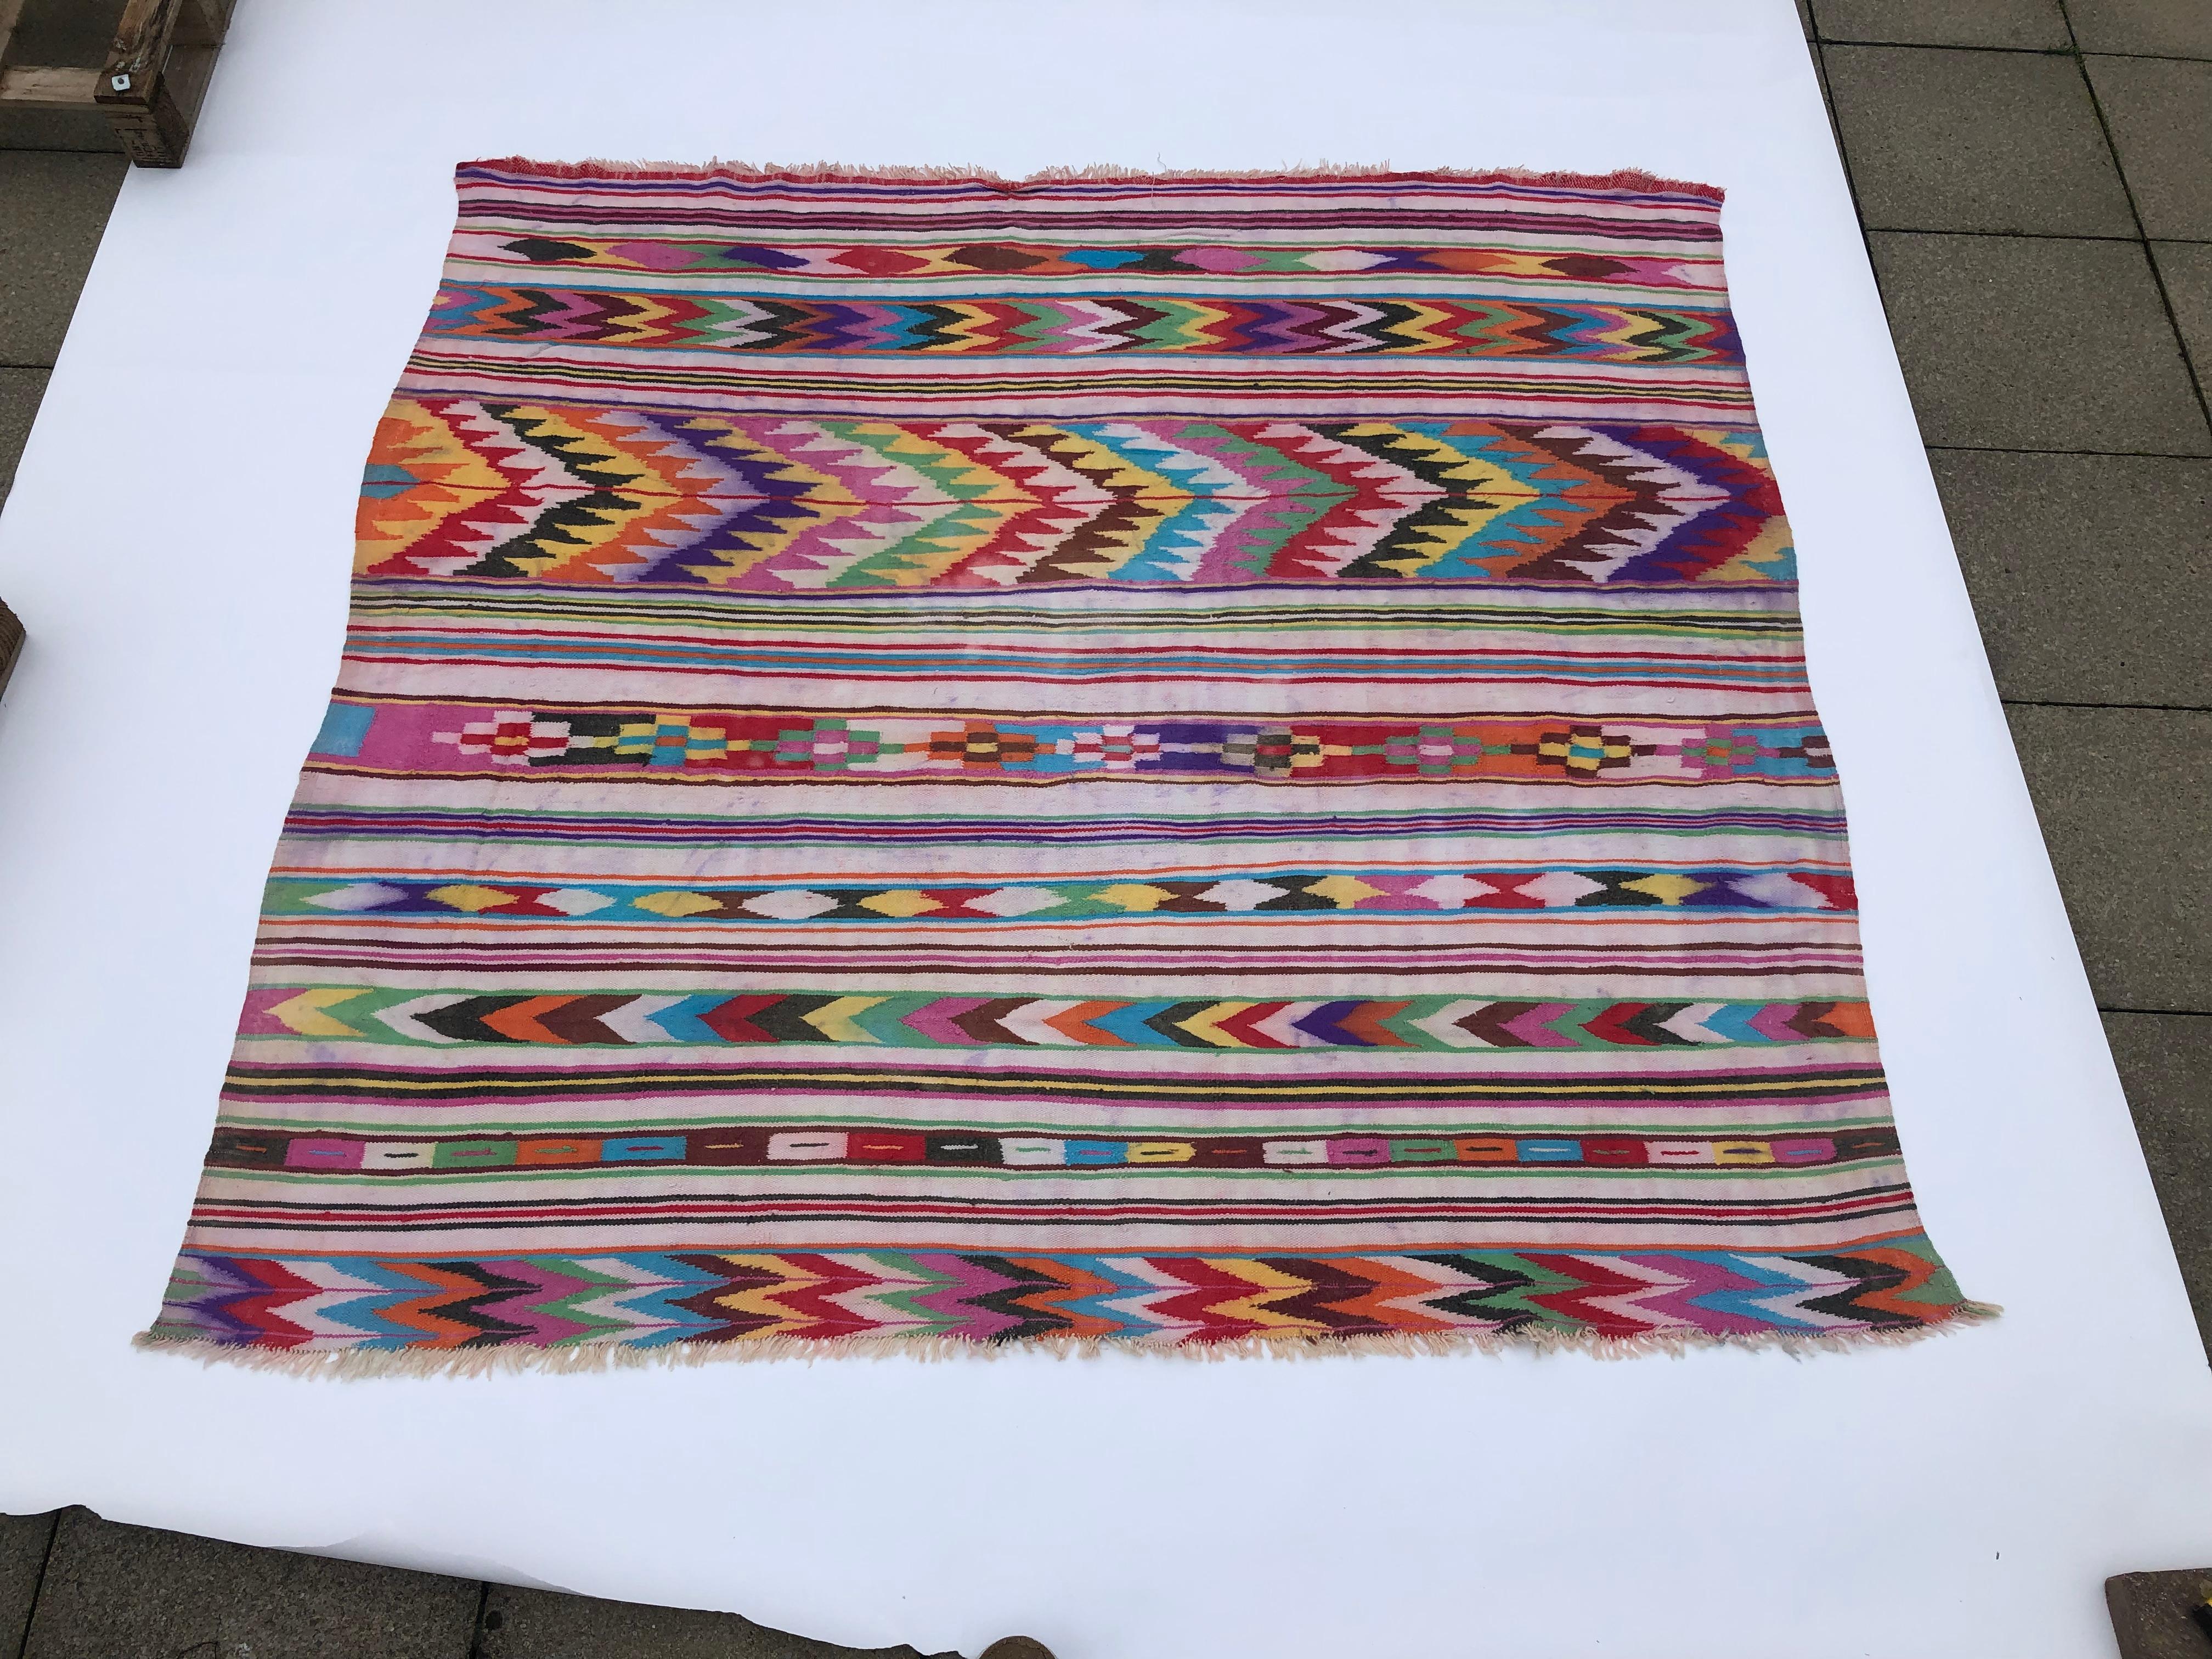 Ein einzigartiger algerischer Berberteppich mit einem mehrfarbigen Muster aus Zickzack, Linien und Rautenformen. Dieser handgewebte Teppich wird in traditioneller Technik von den Berberstämmen der Kabyle im Norden Algeriens hergestellt. Jeder